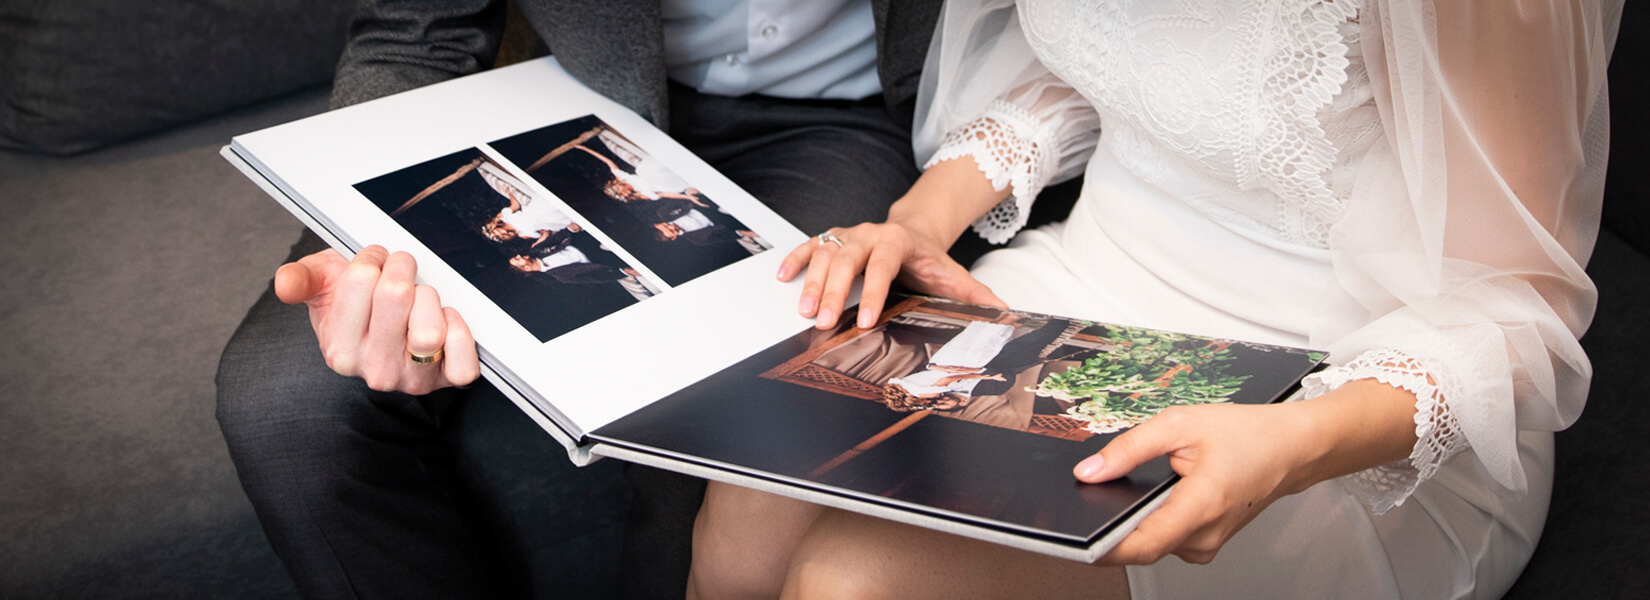 Layflat flushmounted Photo Albums for Wedding Photographers